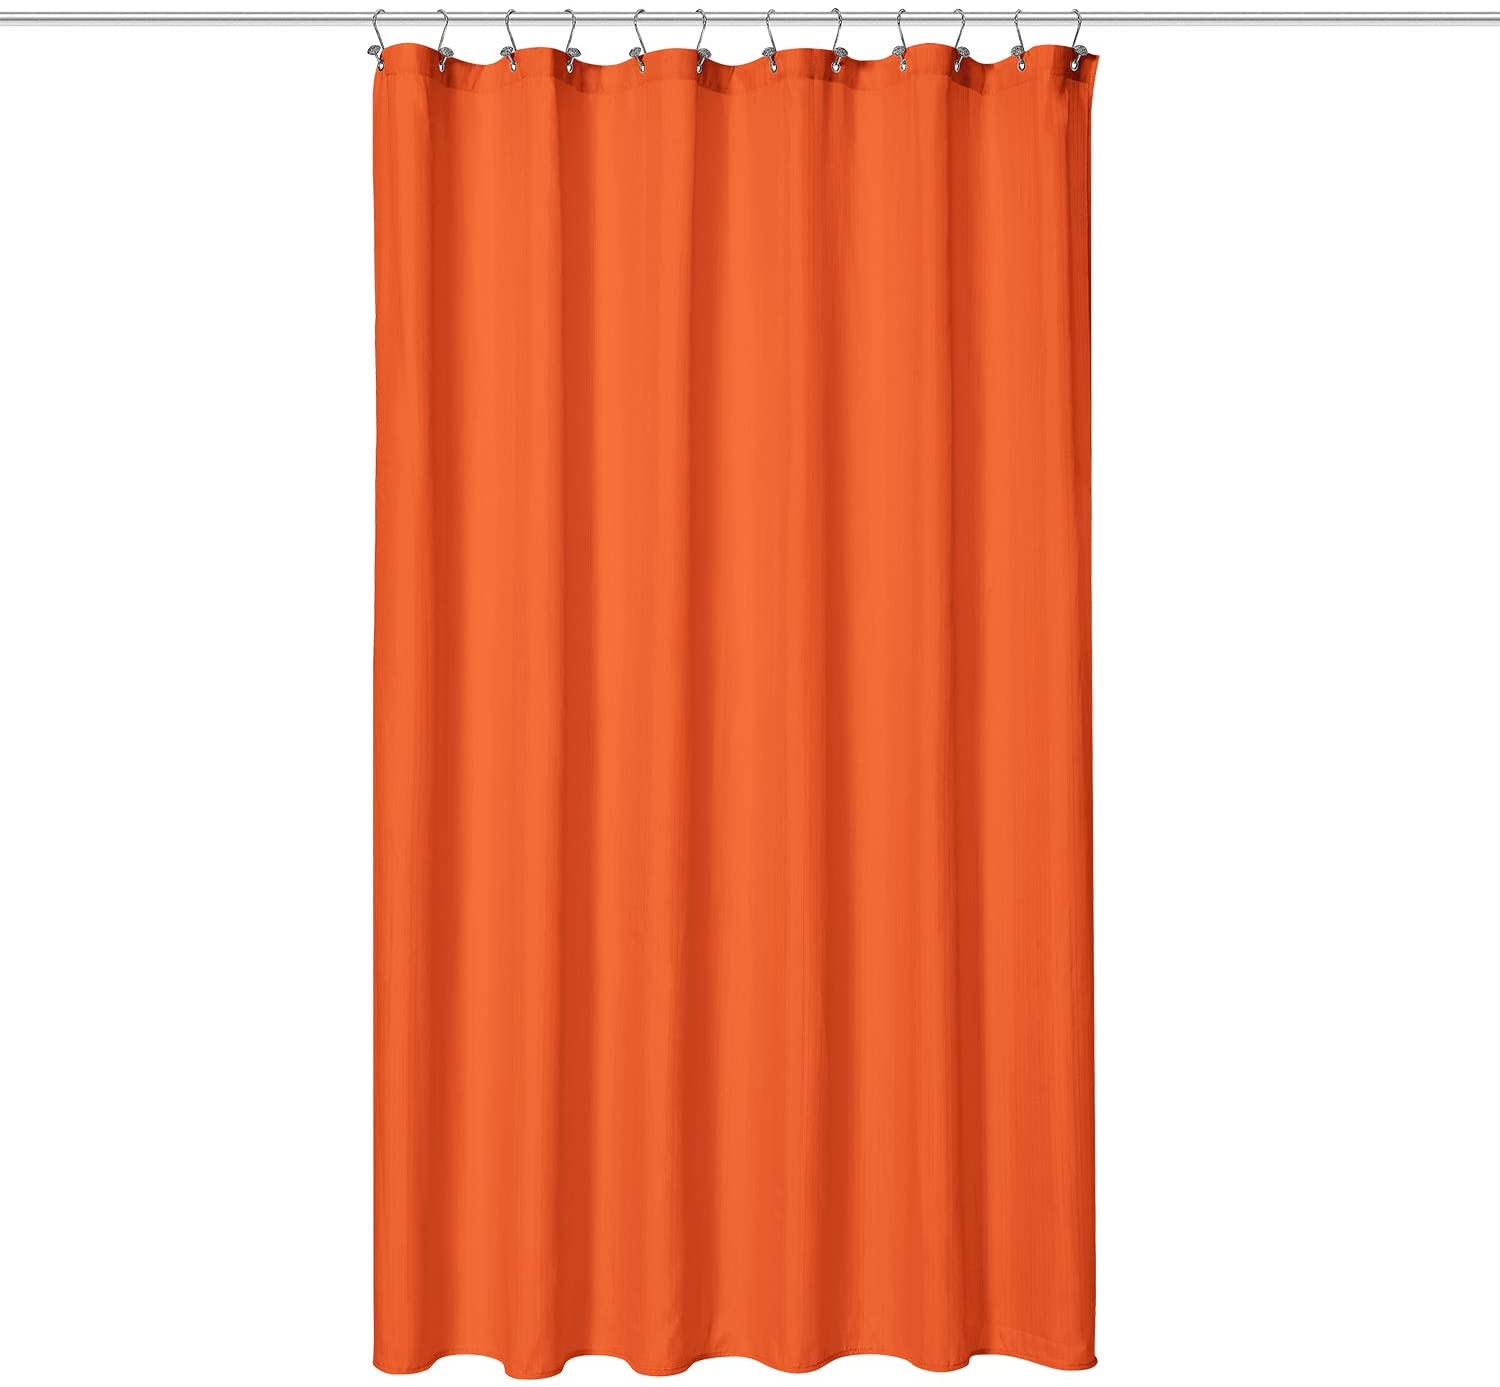 N&Y HOME Hotel Quality Fabric Bathroom Shower Curtain